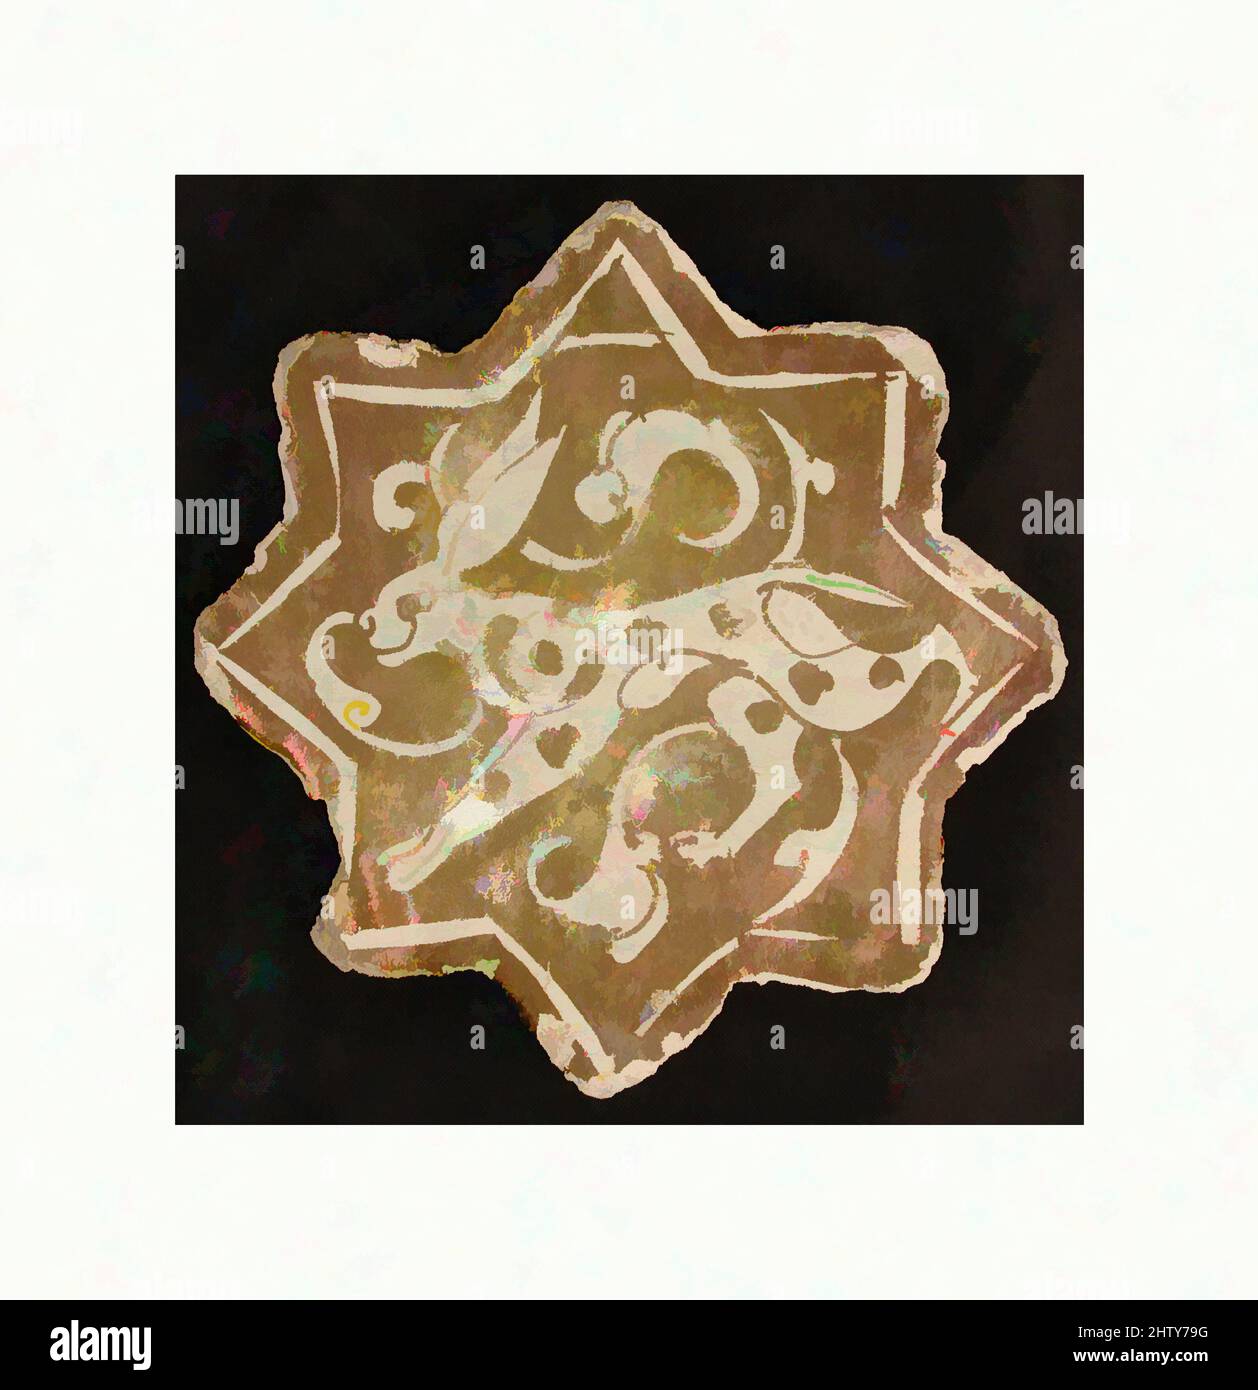 Art inspiré par le carrelage en forme d'étoile, 12th siècle, attribué à l'Iran, Kashan, Stonepaste; Peint lustré, avec 5 1/2 po (14 cm), carreaux de céramique, que ce soit en vrac ou sur un bâtiment, les carreaux vitrés iraniens fascinaient les chercheurs et les collectionneurs pour des raisons esthétiques. Le rôle des carreaux dans la décoration, les œuvres classiques modernisées par Artotop avec un peu de modernité. Formes, couleur et valeur, impact visuel accrocheur sur l'art émotions par la liberté d'œuvres d'art d'une manière contemporaine. Un message intemporel qui cherche une nouvelle direction créative. Artistes qui se tournent vers le support numérique et créent le NFT Artotop Banque D'Images